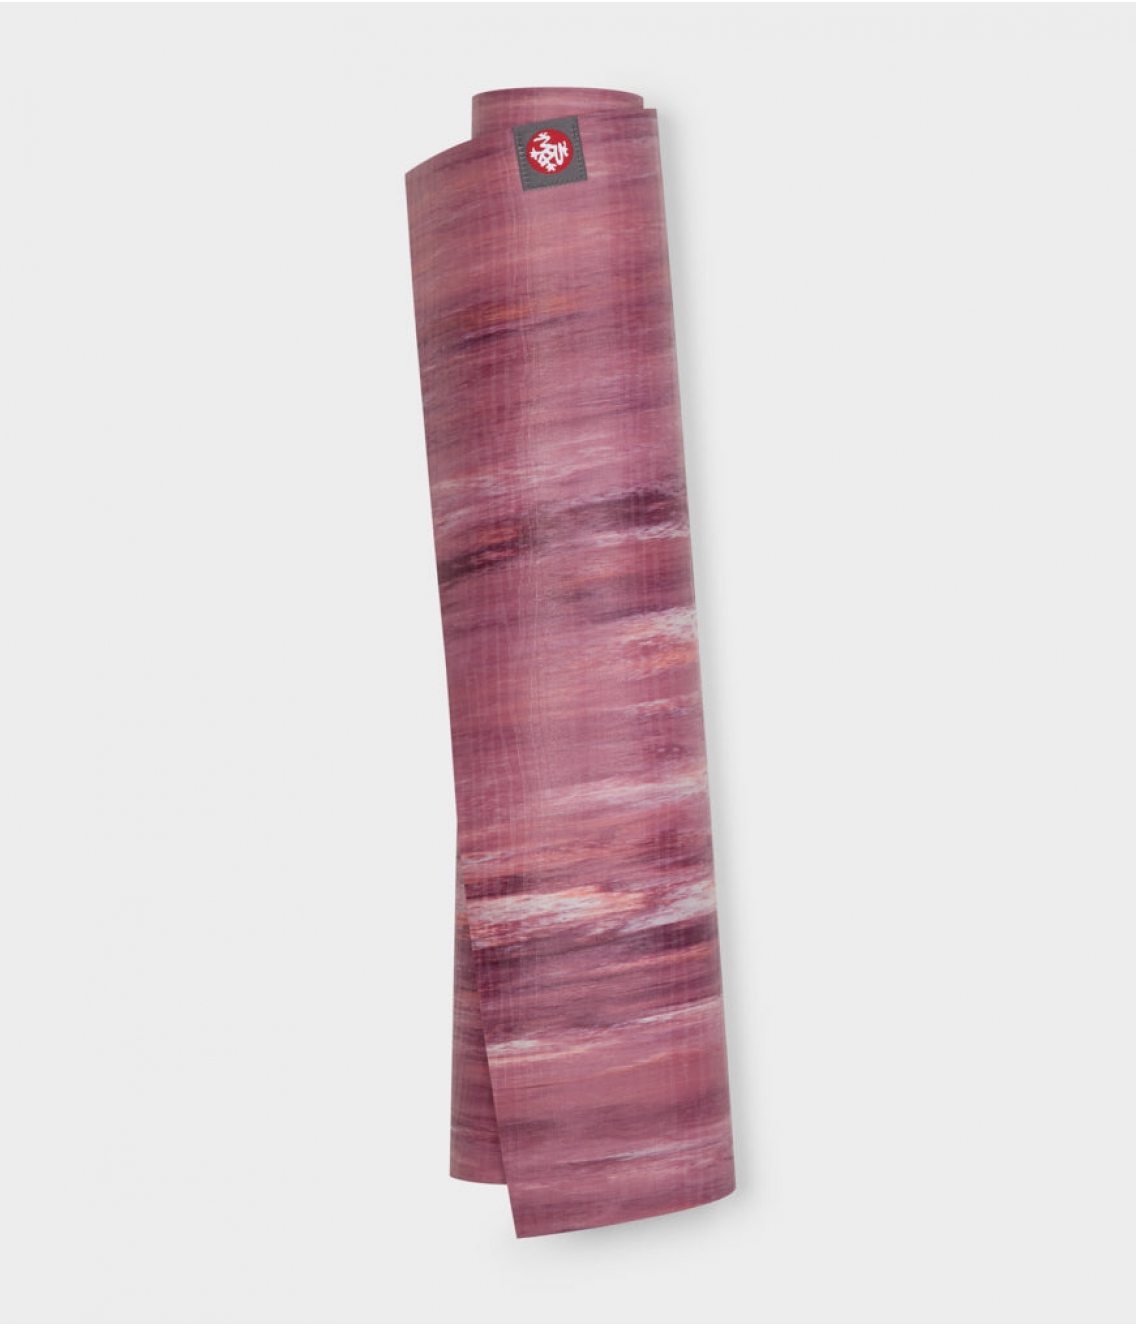 Профессиональный каучуковый коврик для йоги Manduka eKO lite 180*61*0,4 см - Indulge Marbled